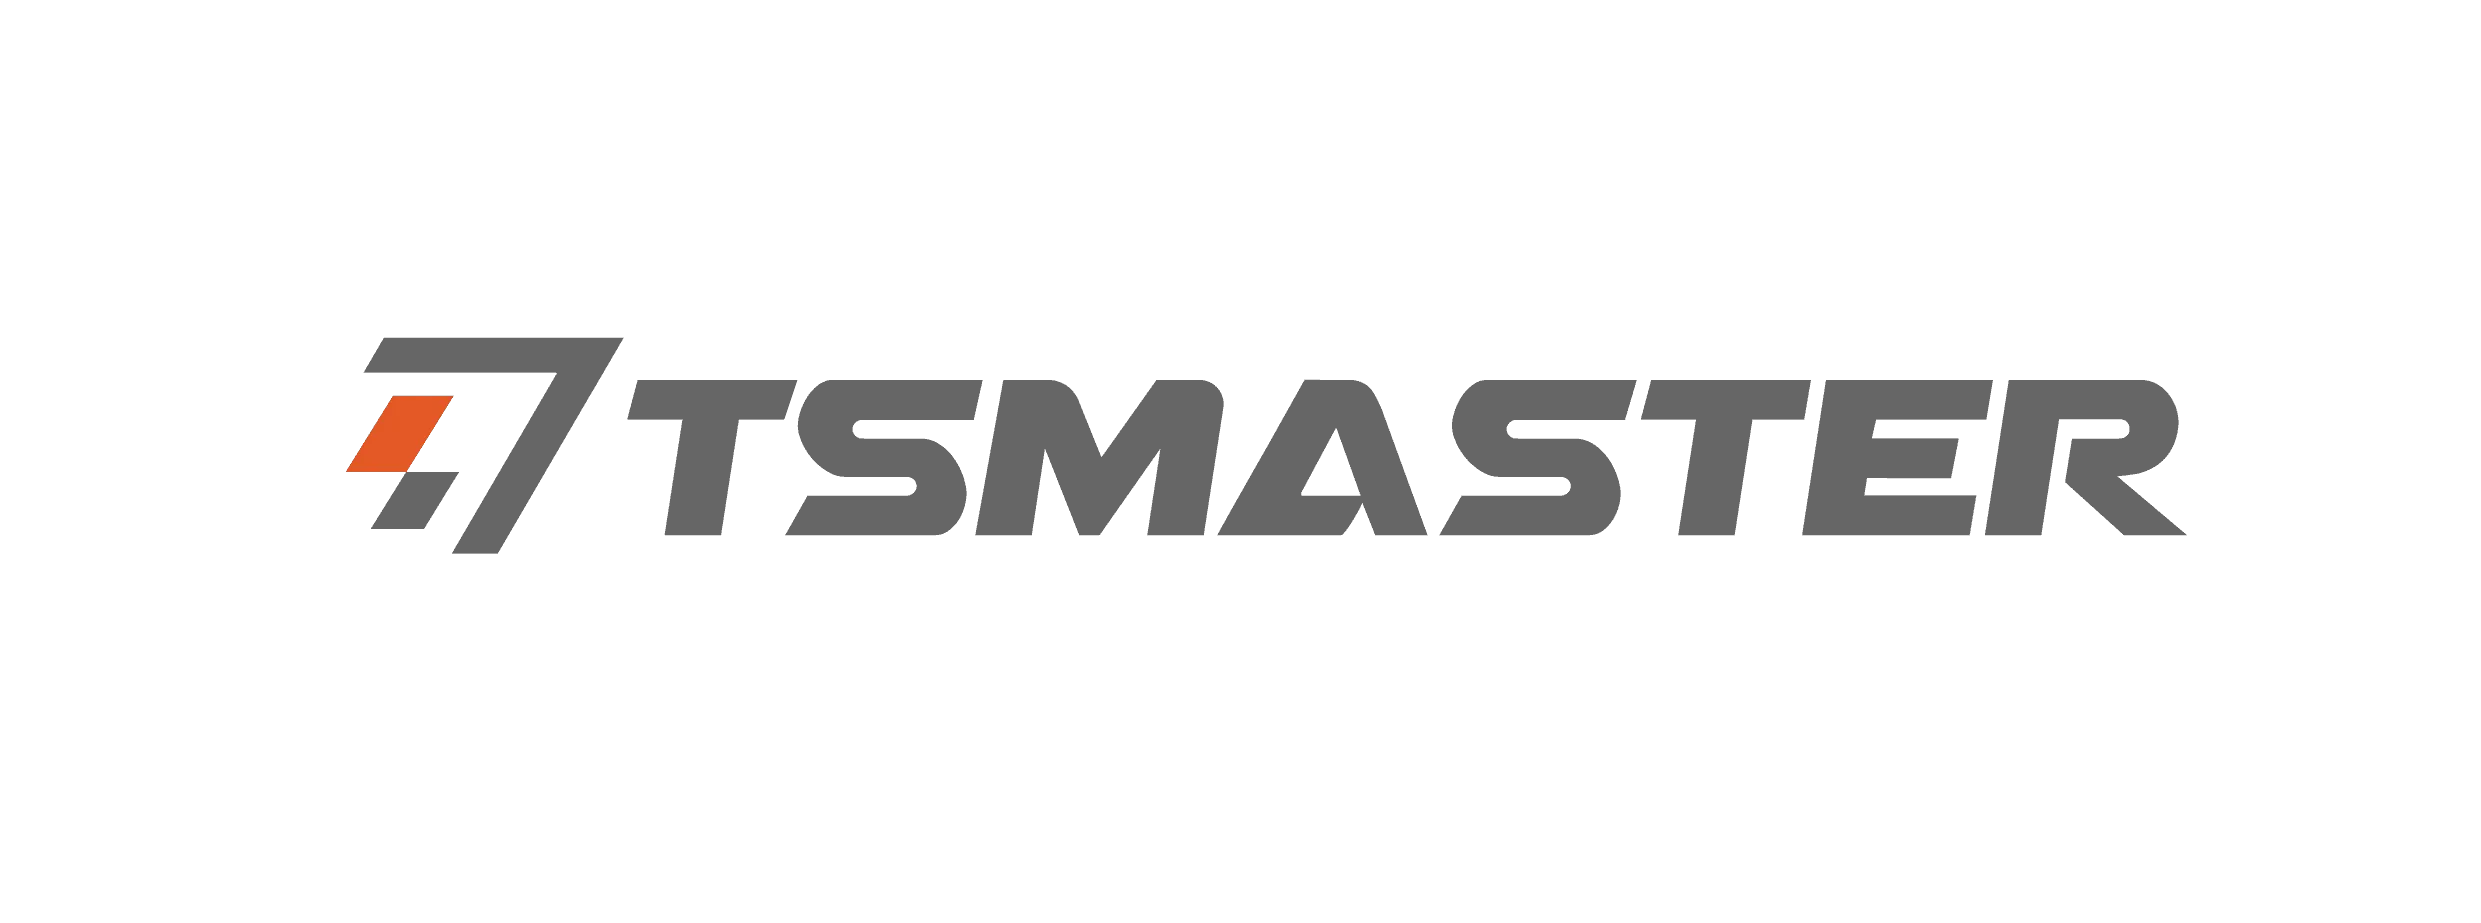 TSMaster logo